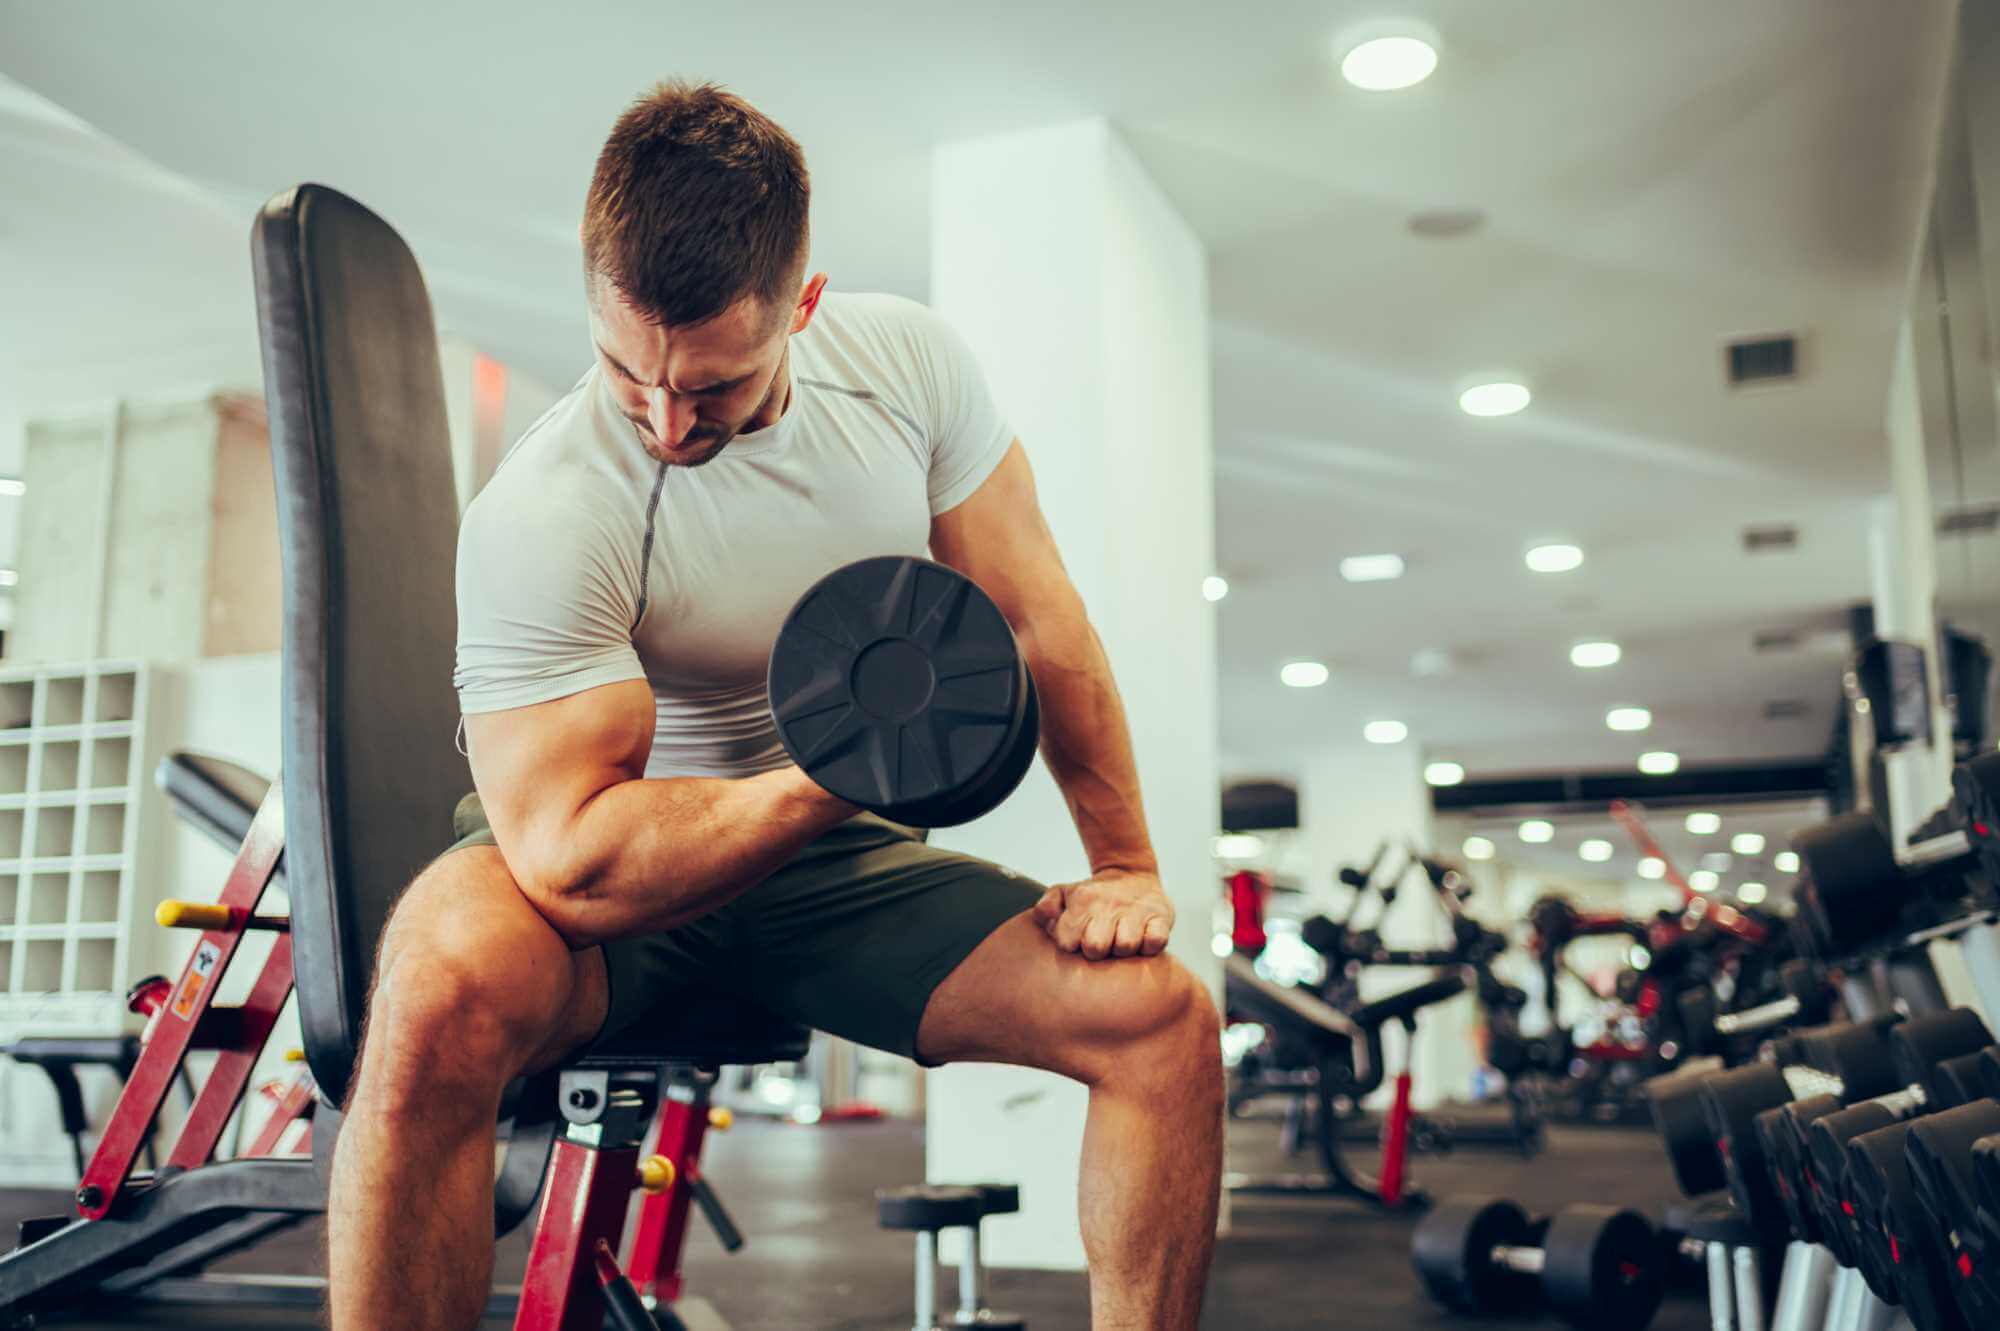 Šest nejlepších bicepsových cviků pro velký objem